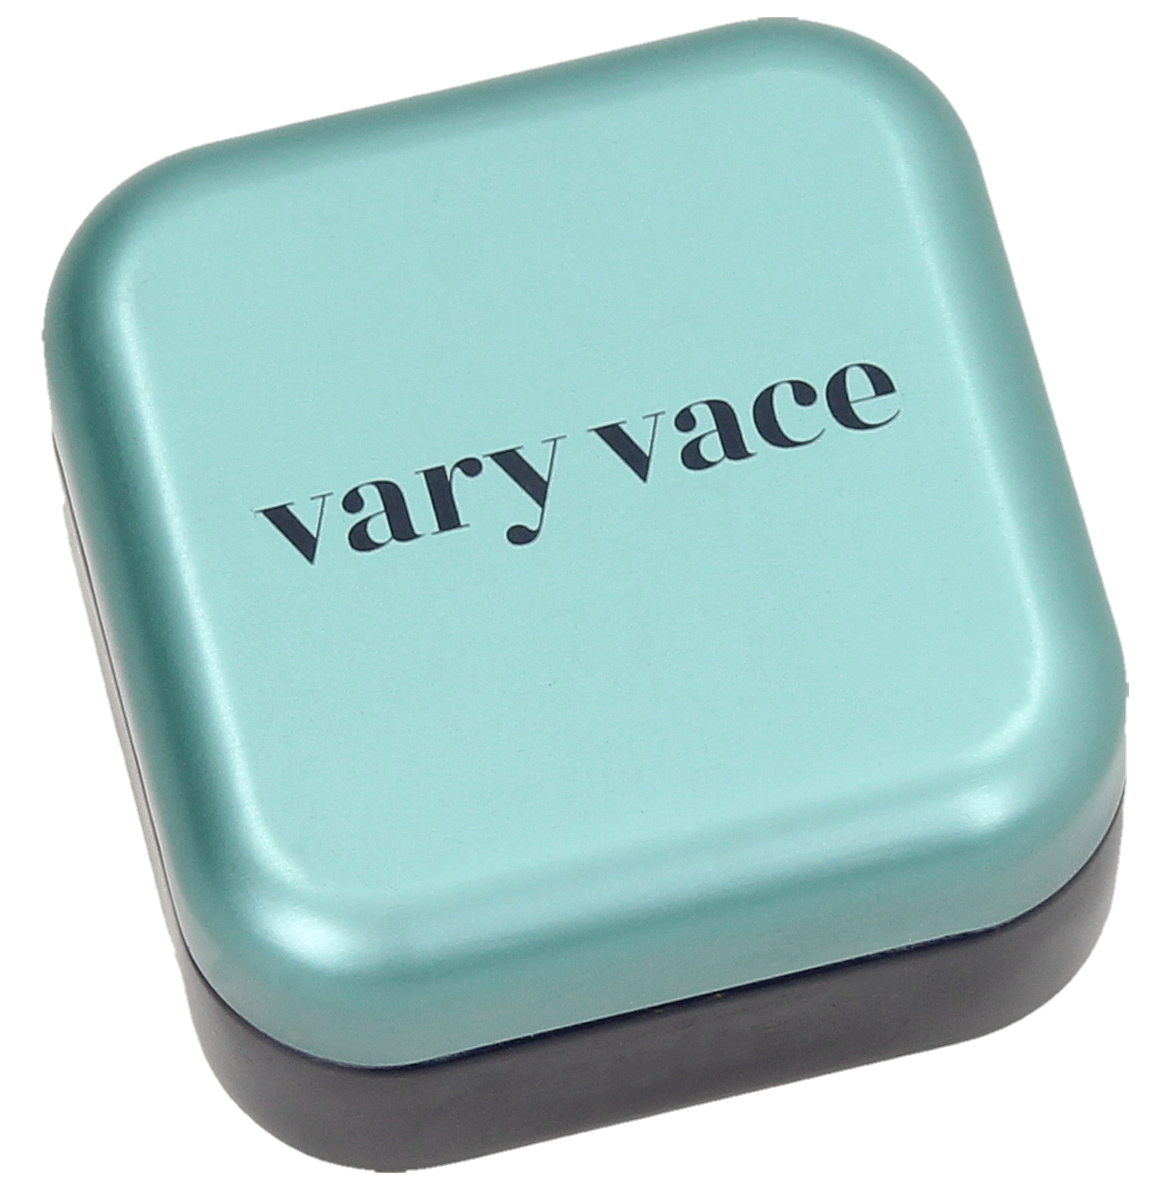 Vary Vace - Refill Eyeshadow / Lidschatten - Julie (Dunkelbraun/Lila)